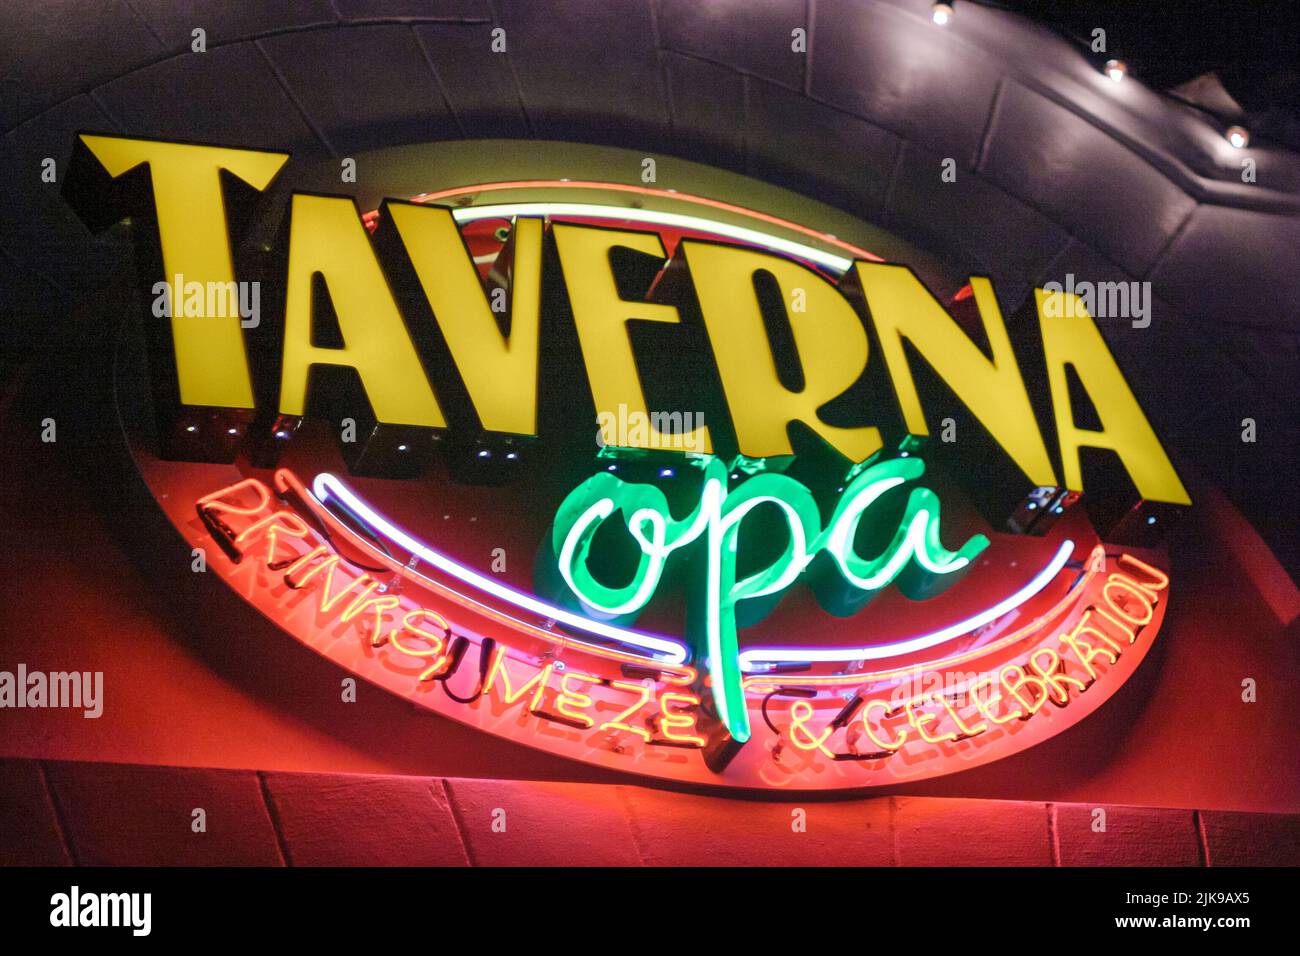 Miami Beach Florida, Taverna Opa ristorante greco ristoranti cibo mangiare fuori cafe cafe bistrot, notte nightlife neon sign, scena in una foto, Stati Uniti d'America Foto Stock